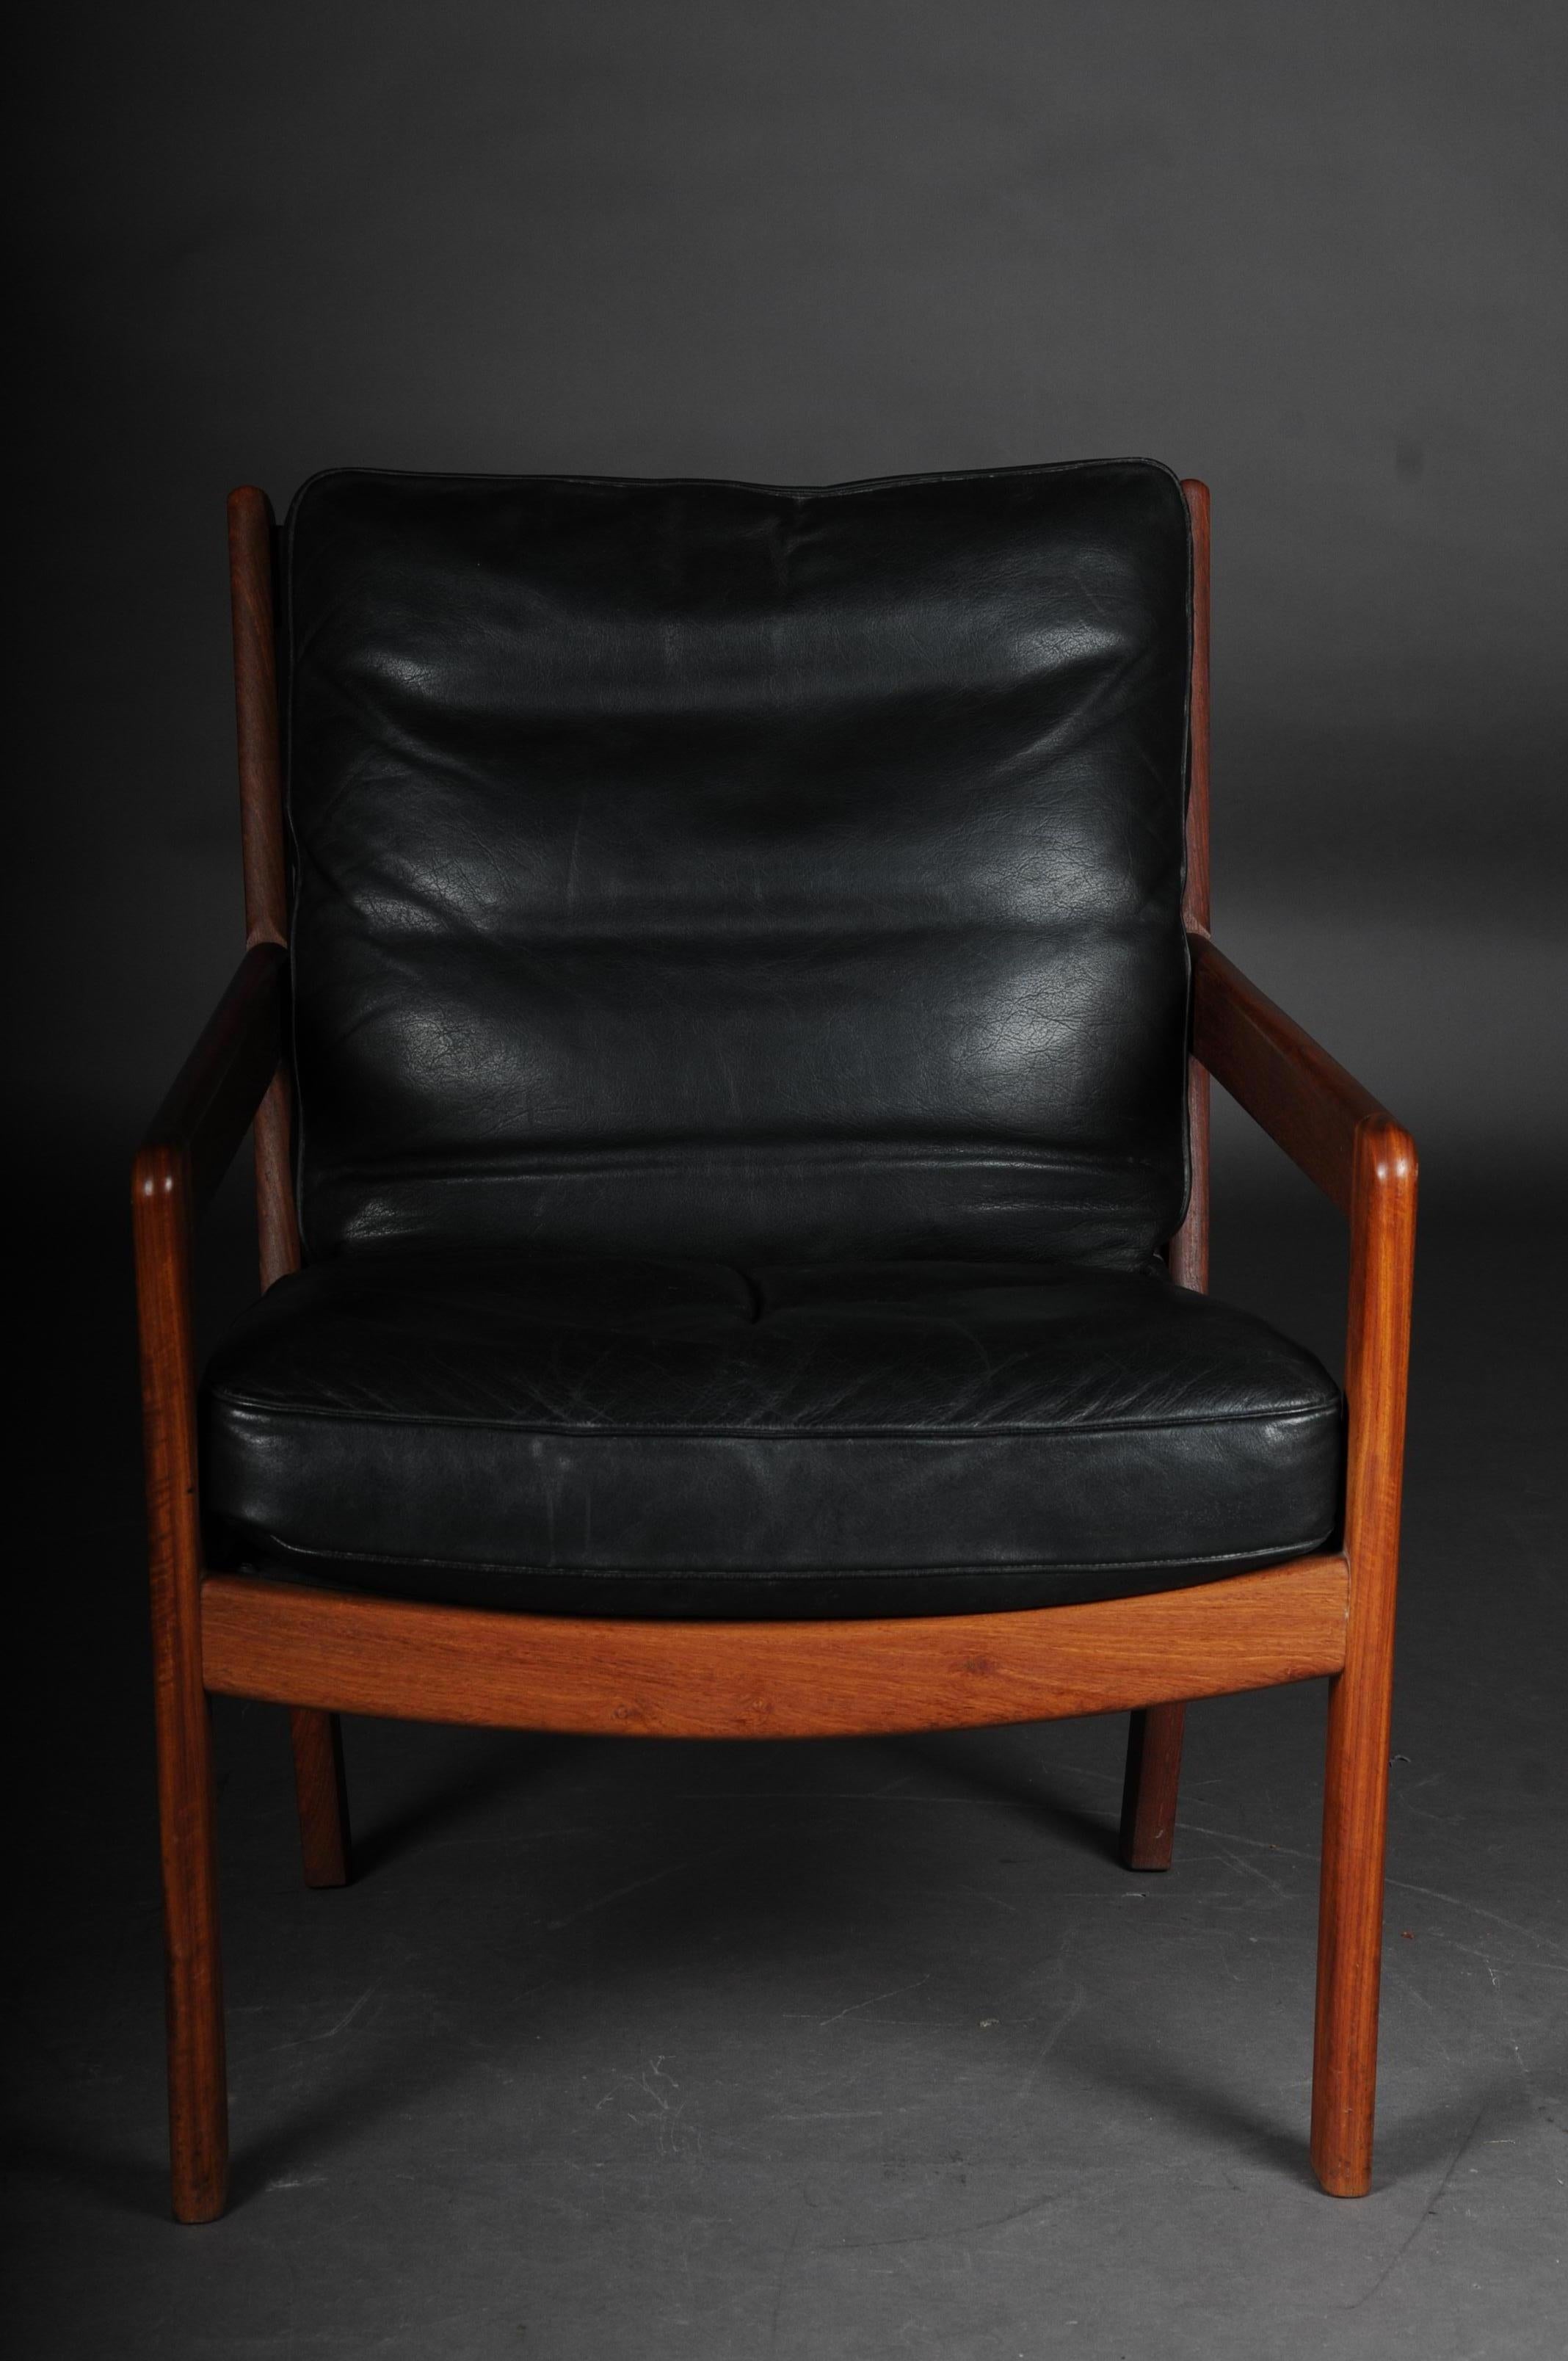 Paire de fauteuils vintage en teck, chaises, années 1960-1970, danois

Fauteuil en teck massif, simple et extrêmement confortable. Probablement des années 1960-1970
Cette chaise rembourrée, qui convainc par son élégance simple, a été conçue à